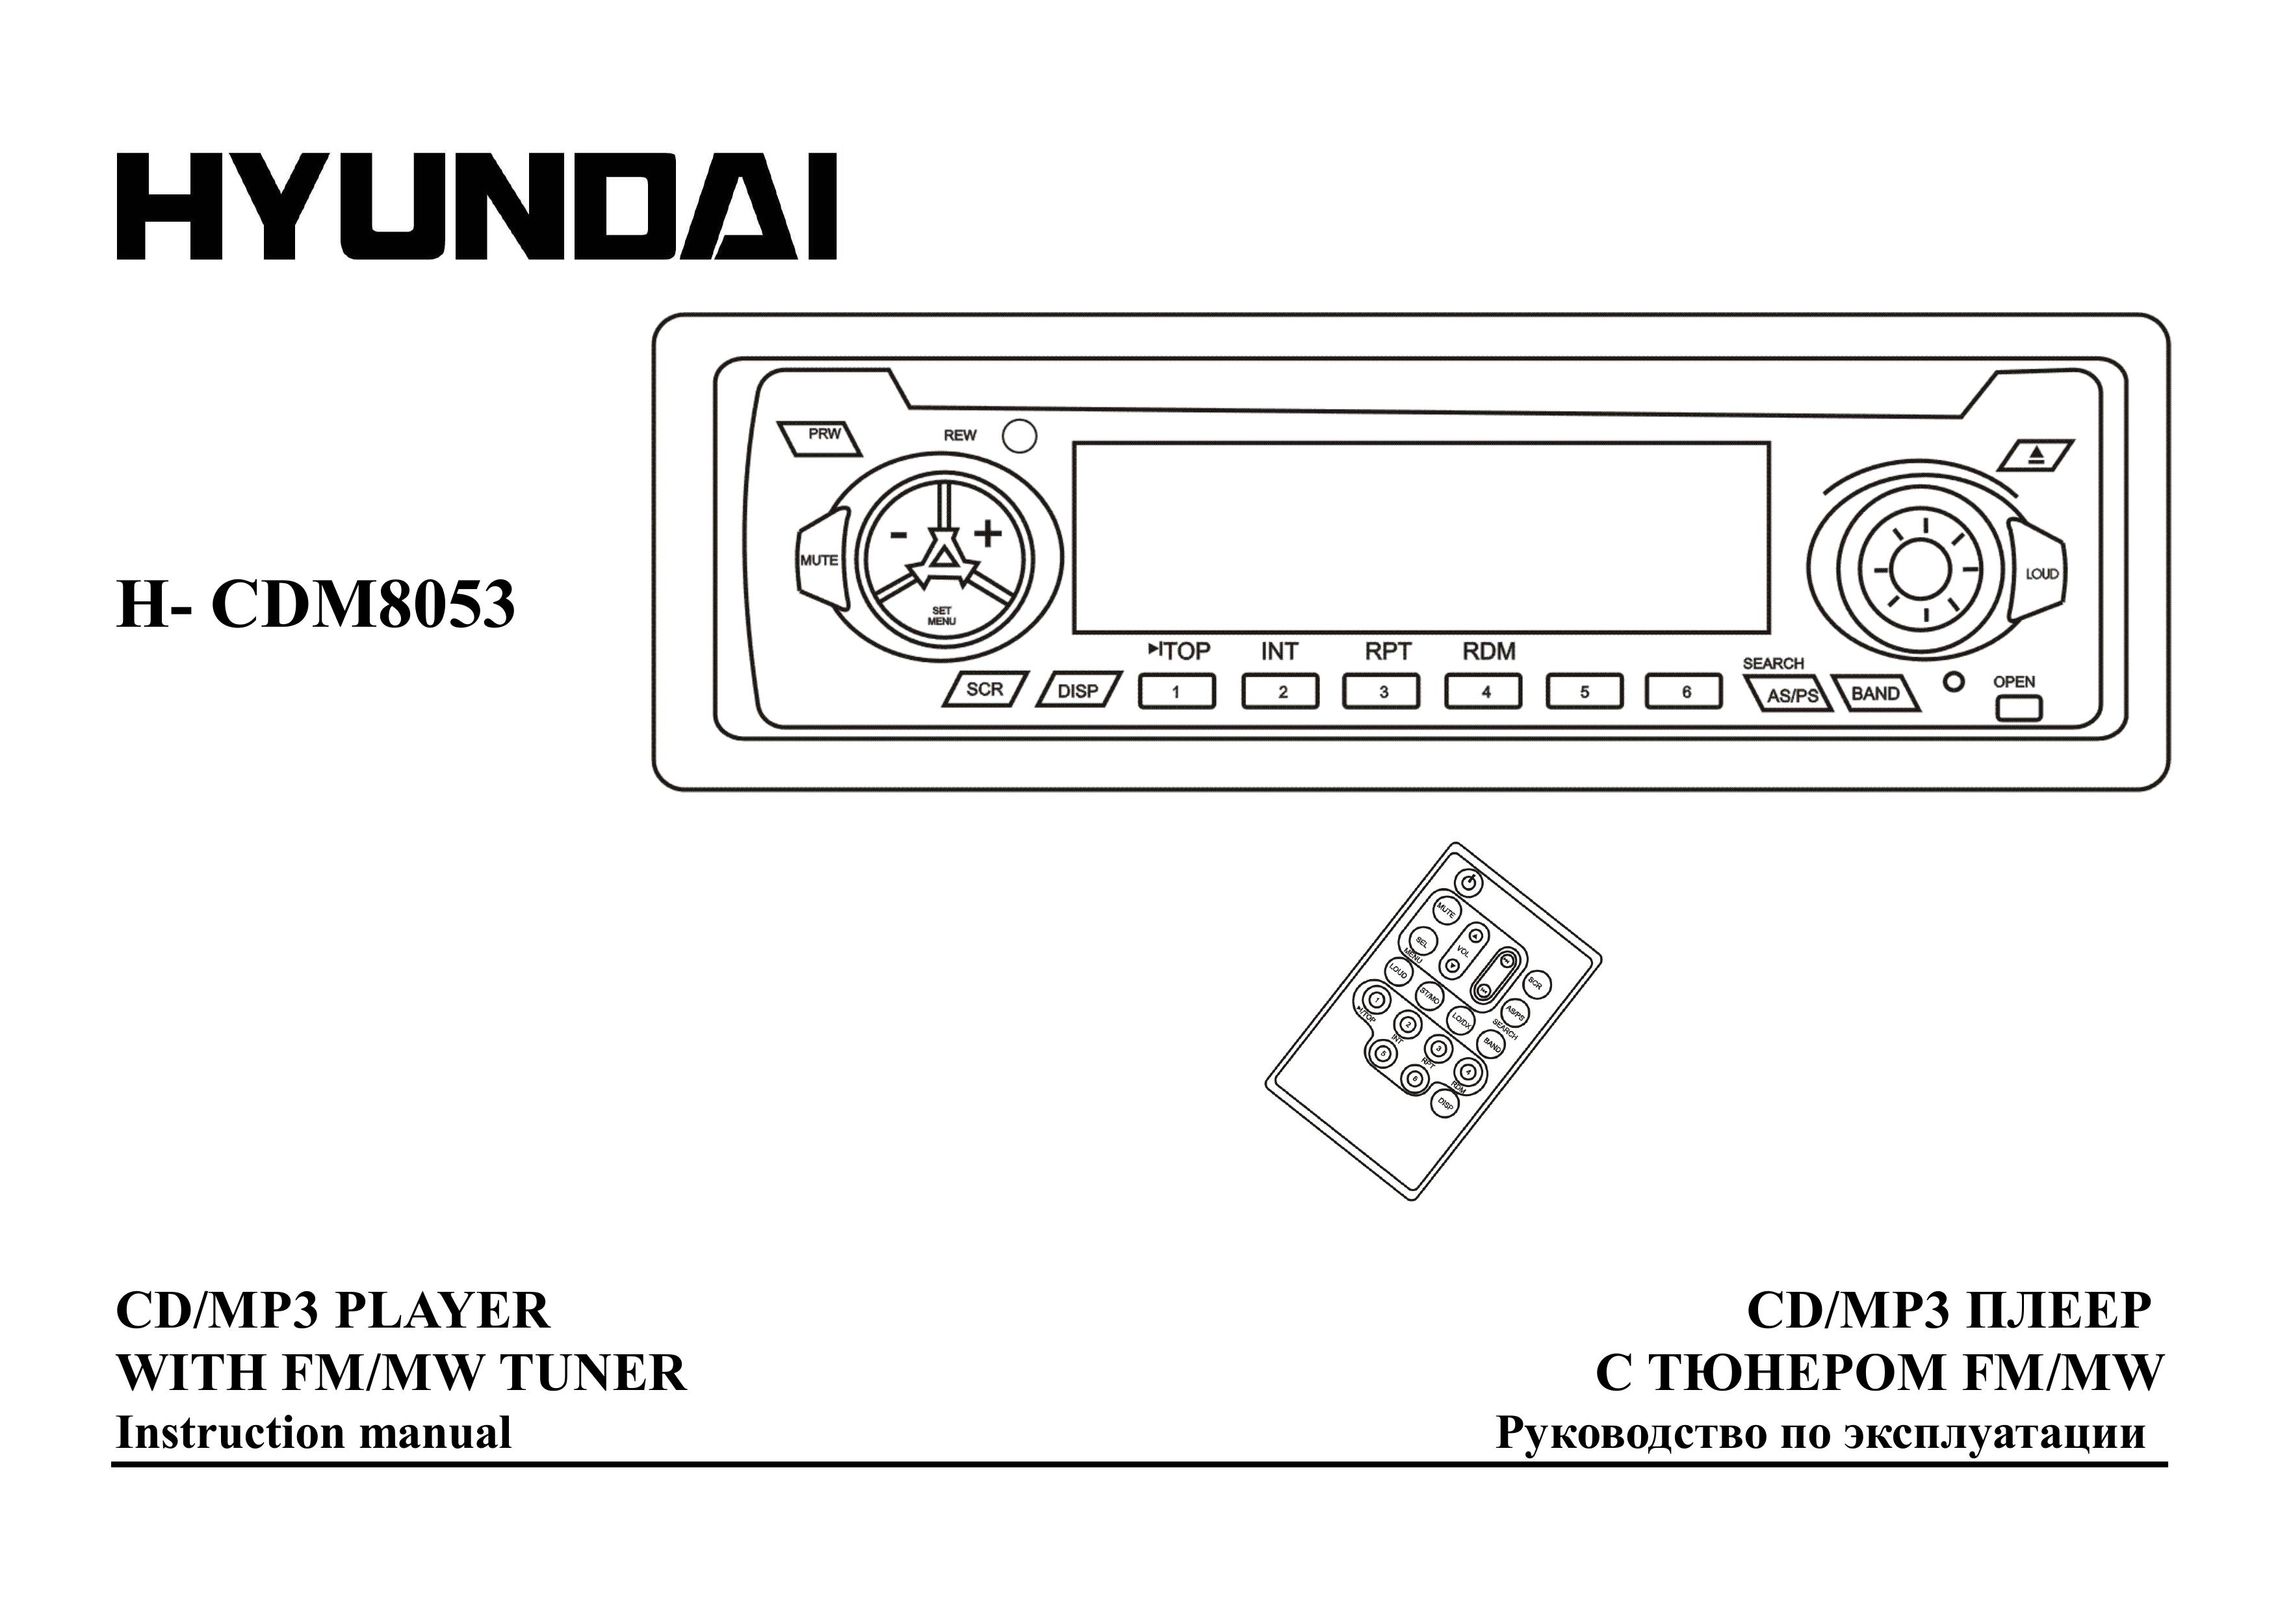 Hyundai H- CDM8053 Car Stereo System User Manual